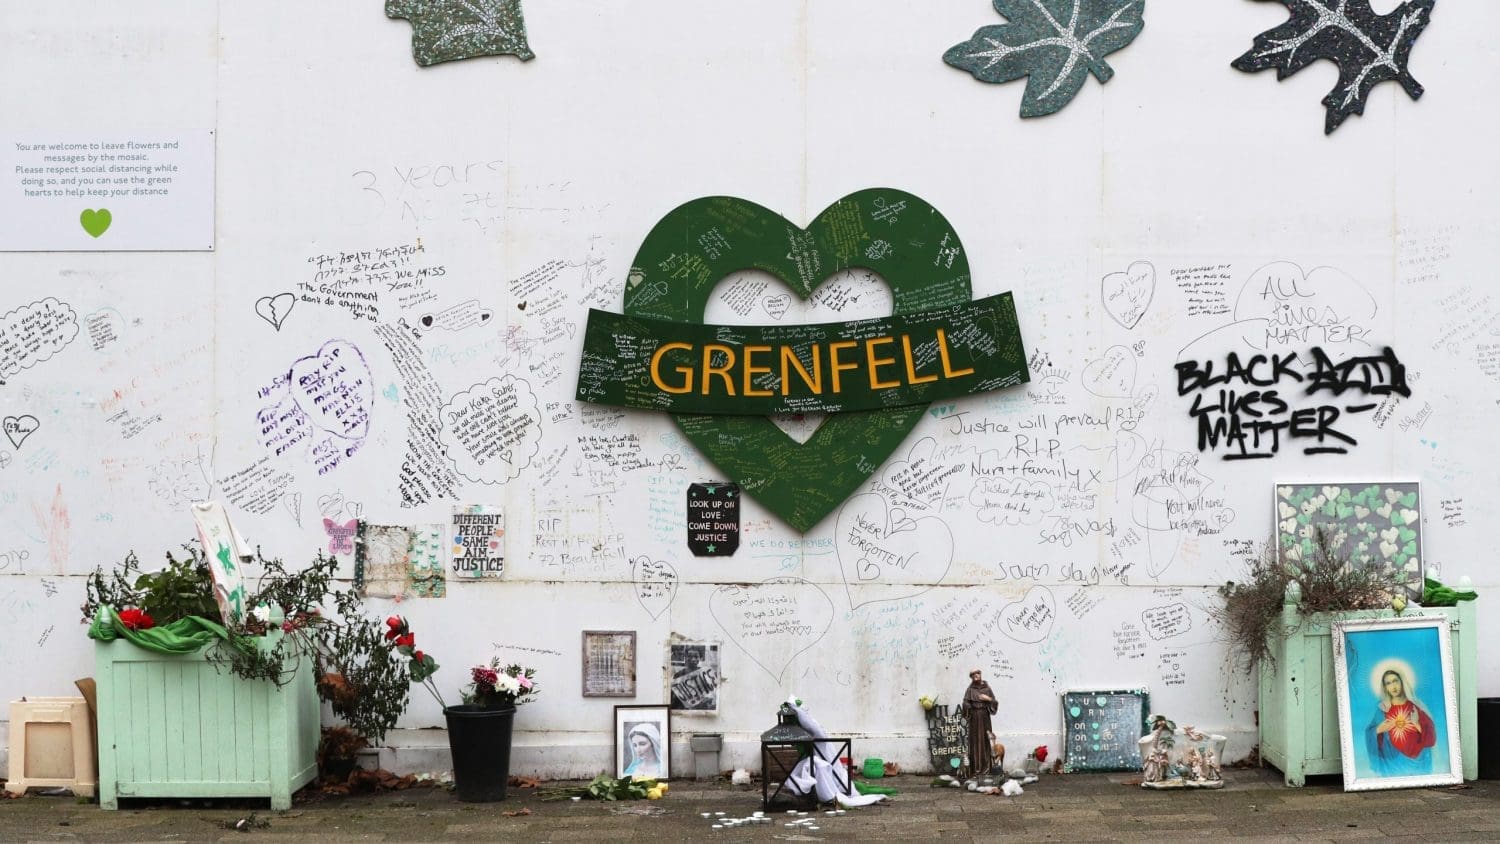 A Grenfell memorial